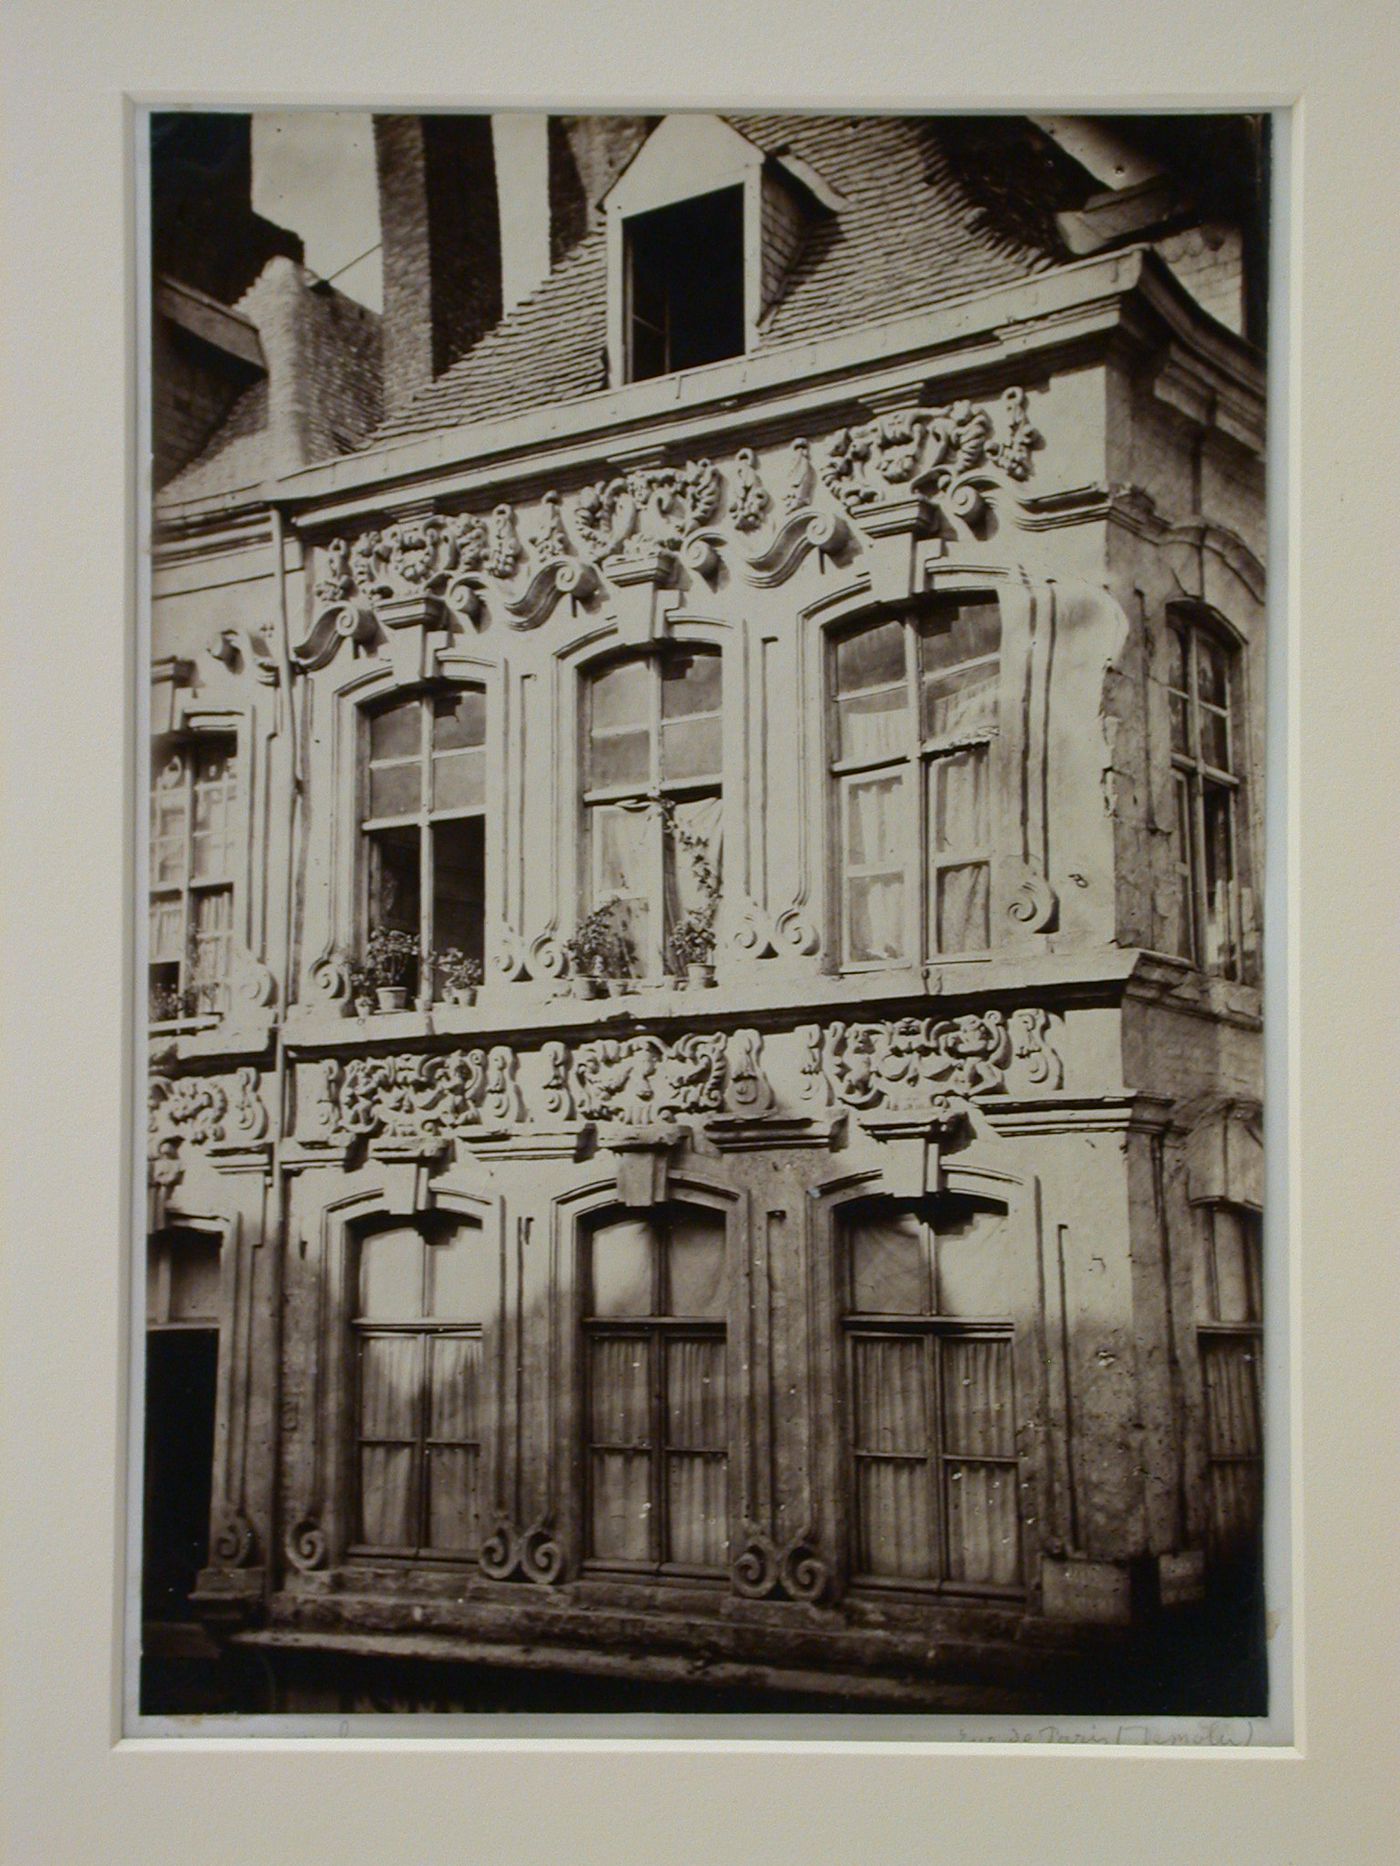 Maison espagnole Bue de Paris (Demoli), Paris